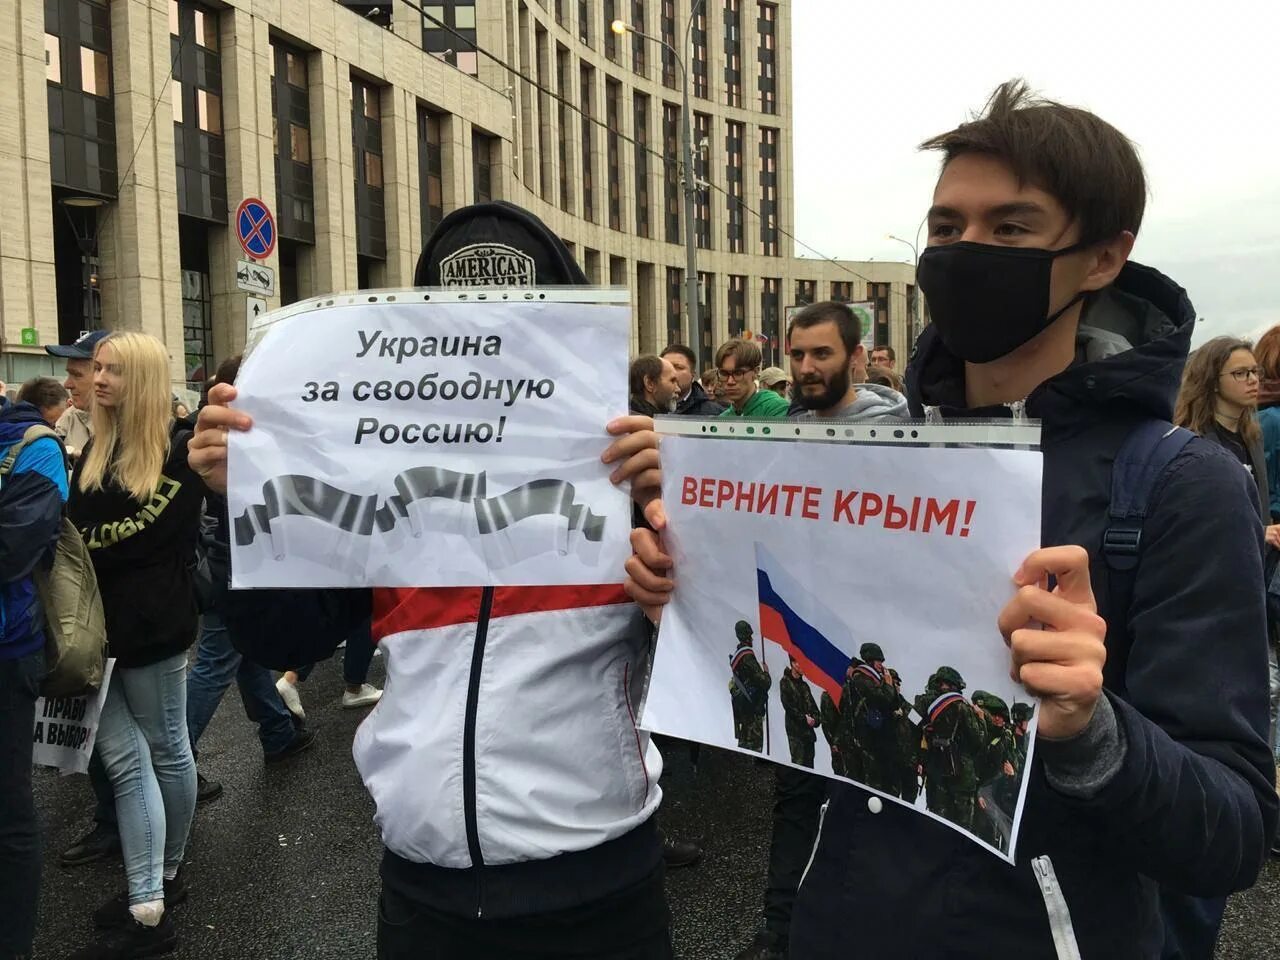 Какой будет свободная россия. Свободная Украина. Митинг в Москве с флагами Украины. Россия будет свободной. Миттинги Россия будет свободной.